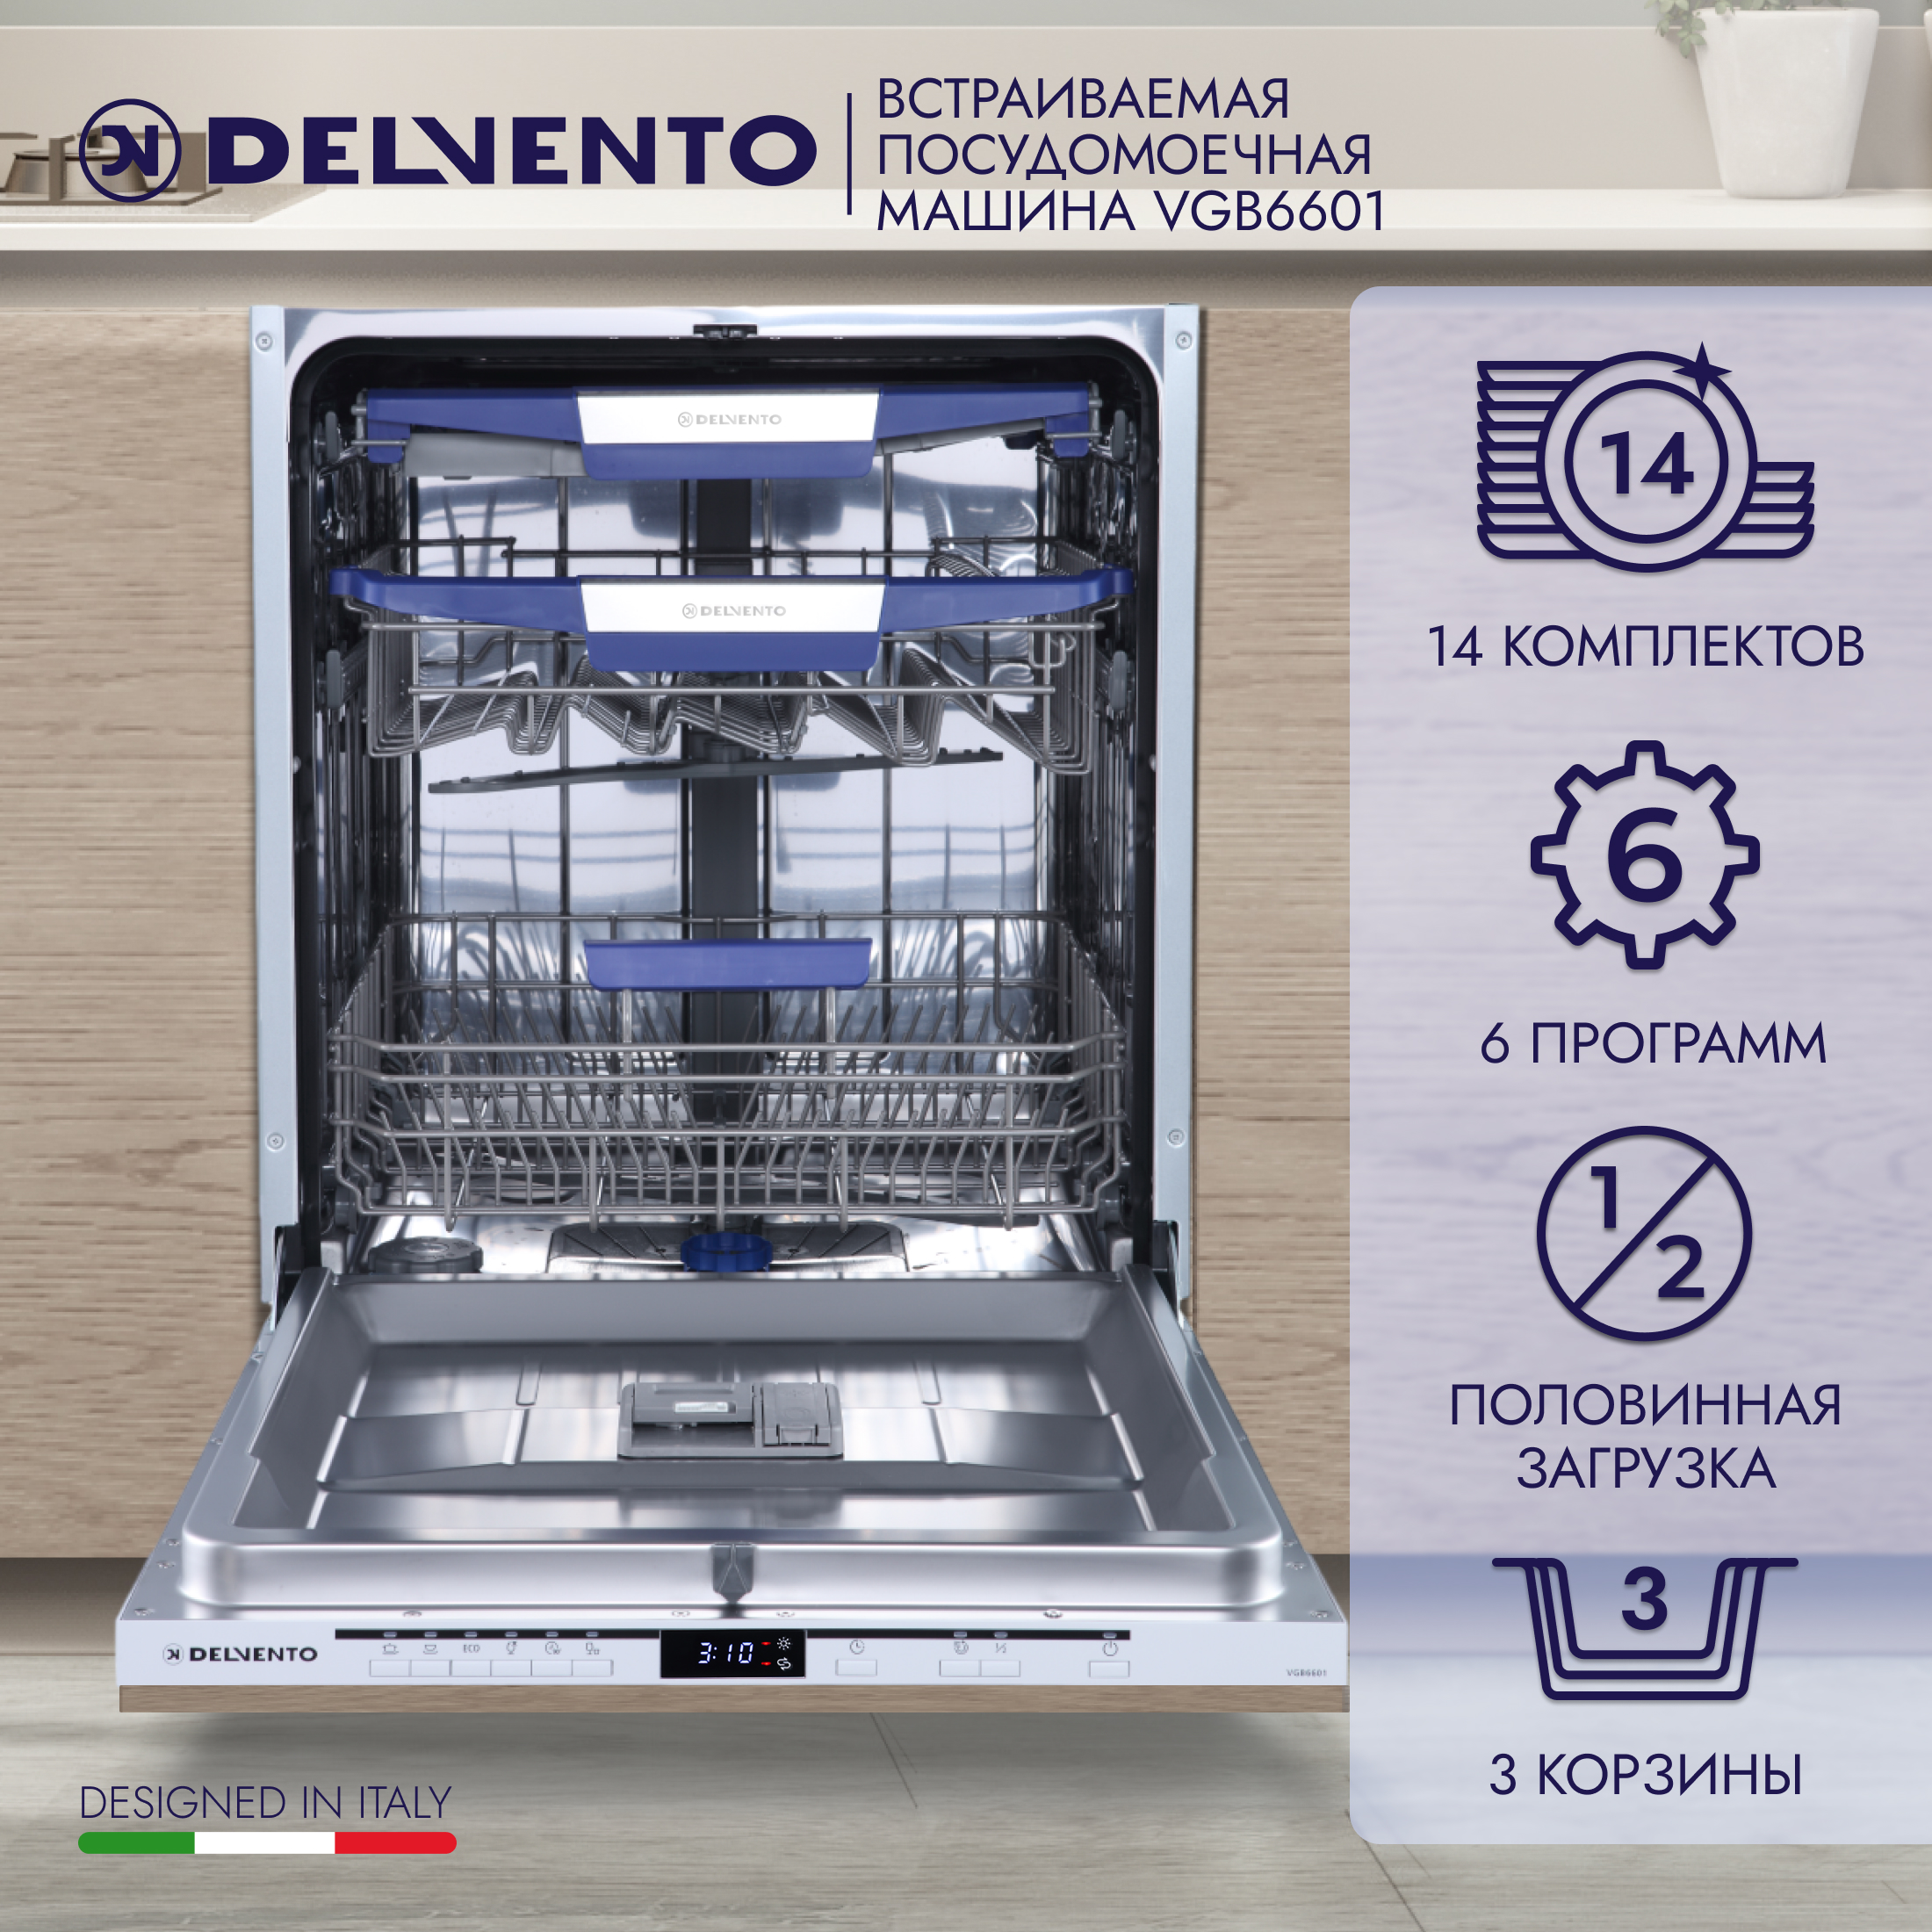 Встраиваемая посудомоечная машина DELVENTO VGB6601 встраиваемая посудомоечная машина delvento vgb6601